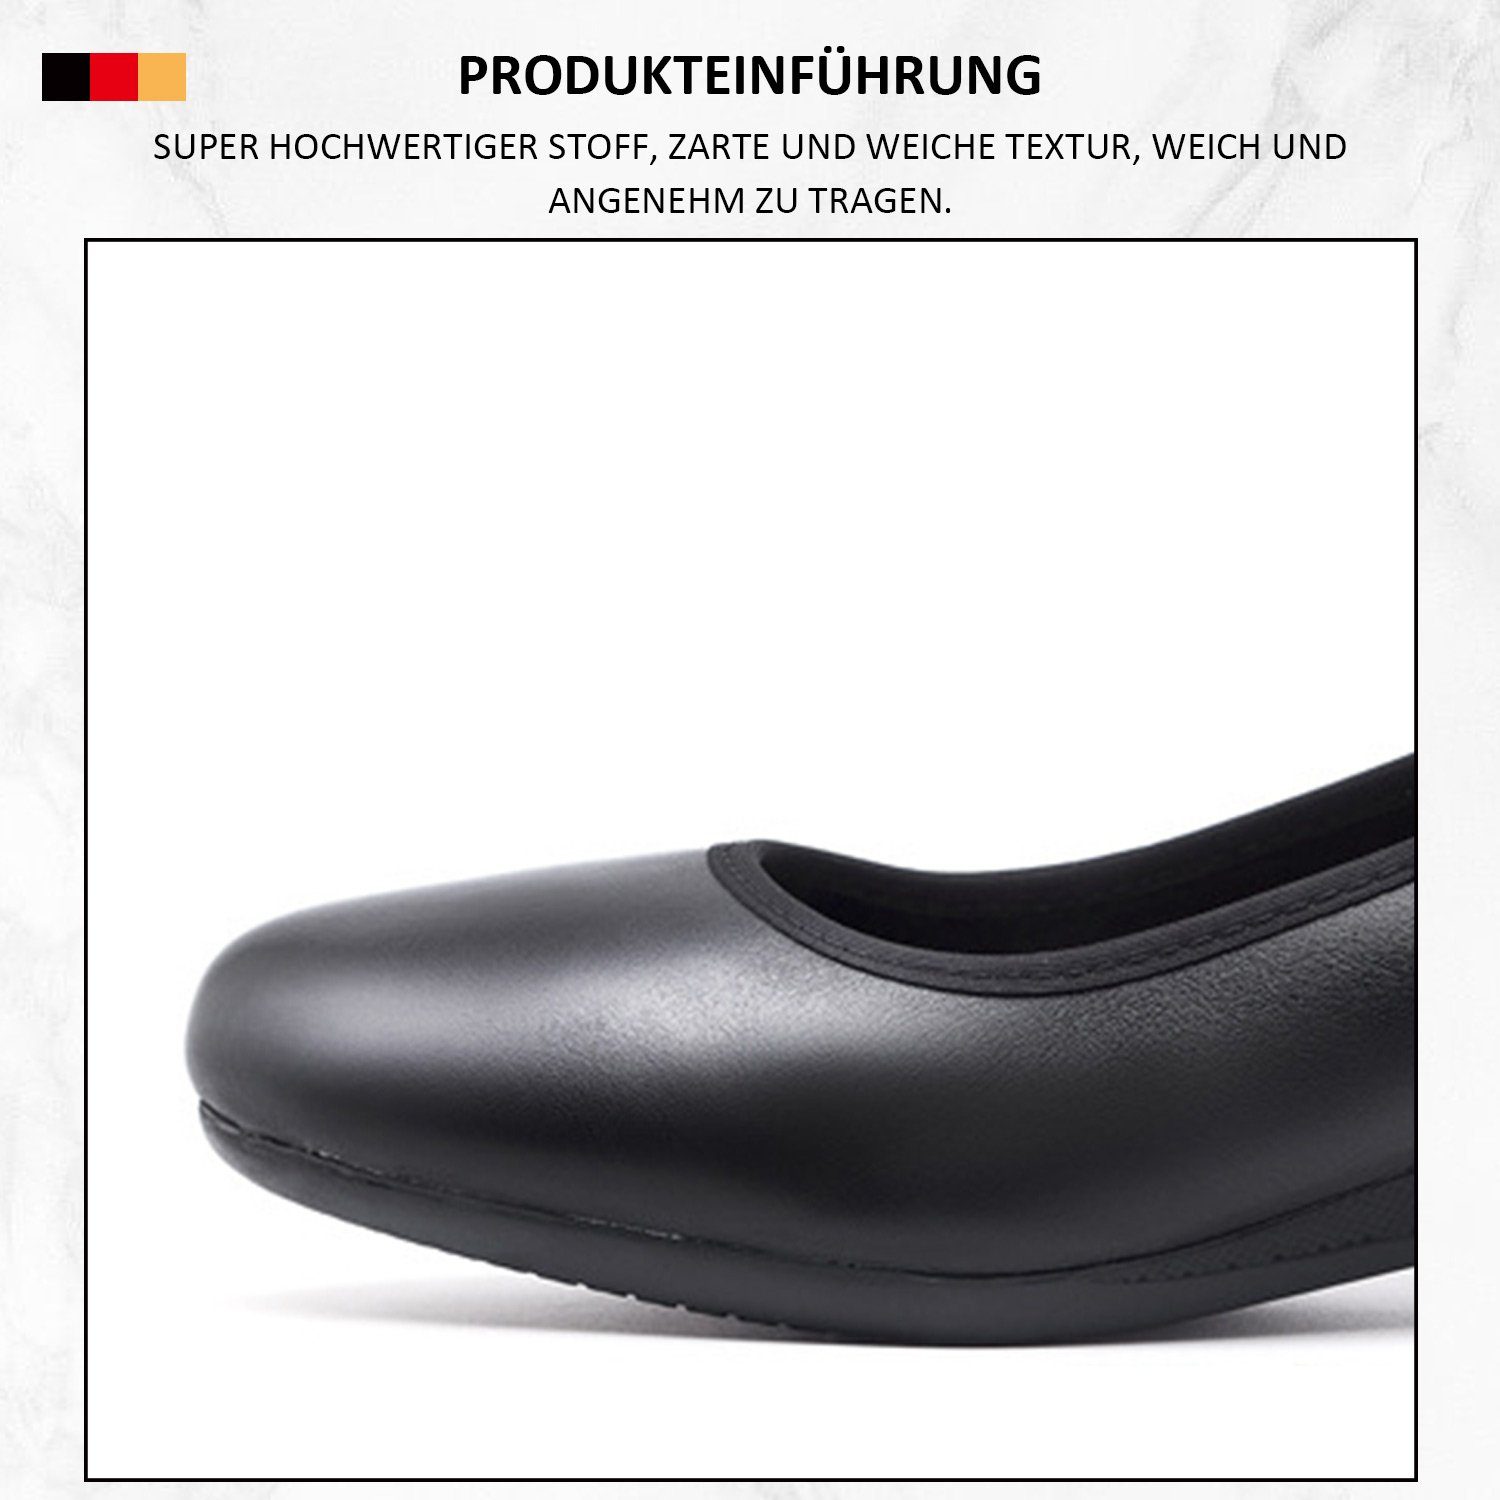 runder Pumps geschlossener Linie Frauen Zehenpartie MAGICSHE Pumps formelle Schuhe mit Schwarz006 Bequeme in klassischer